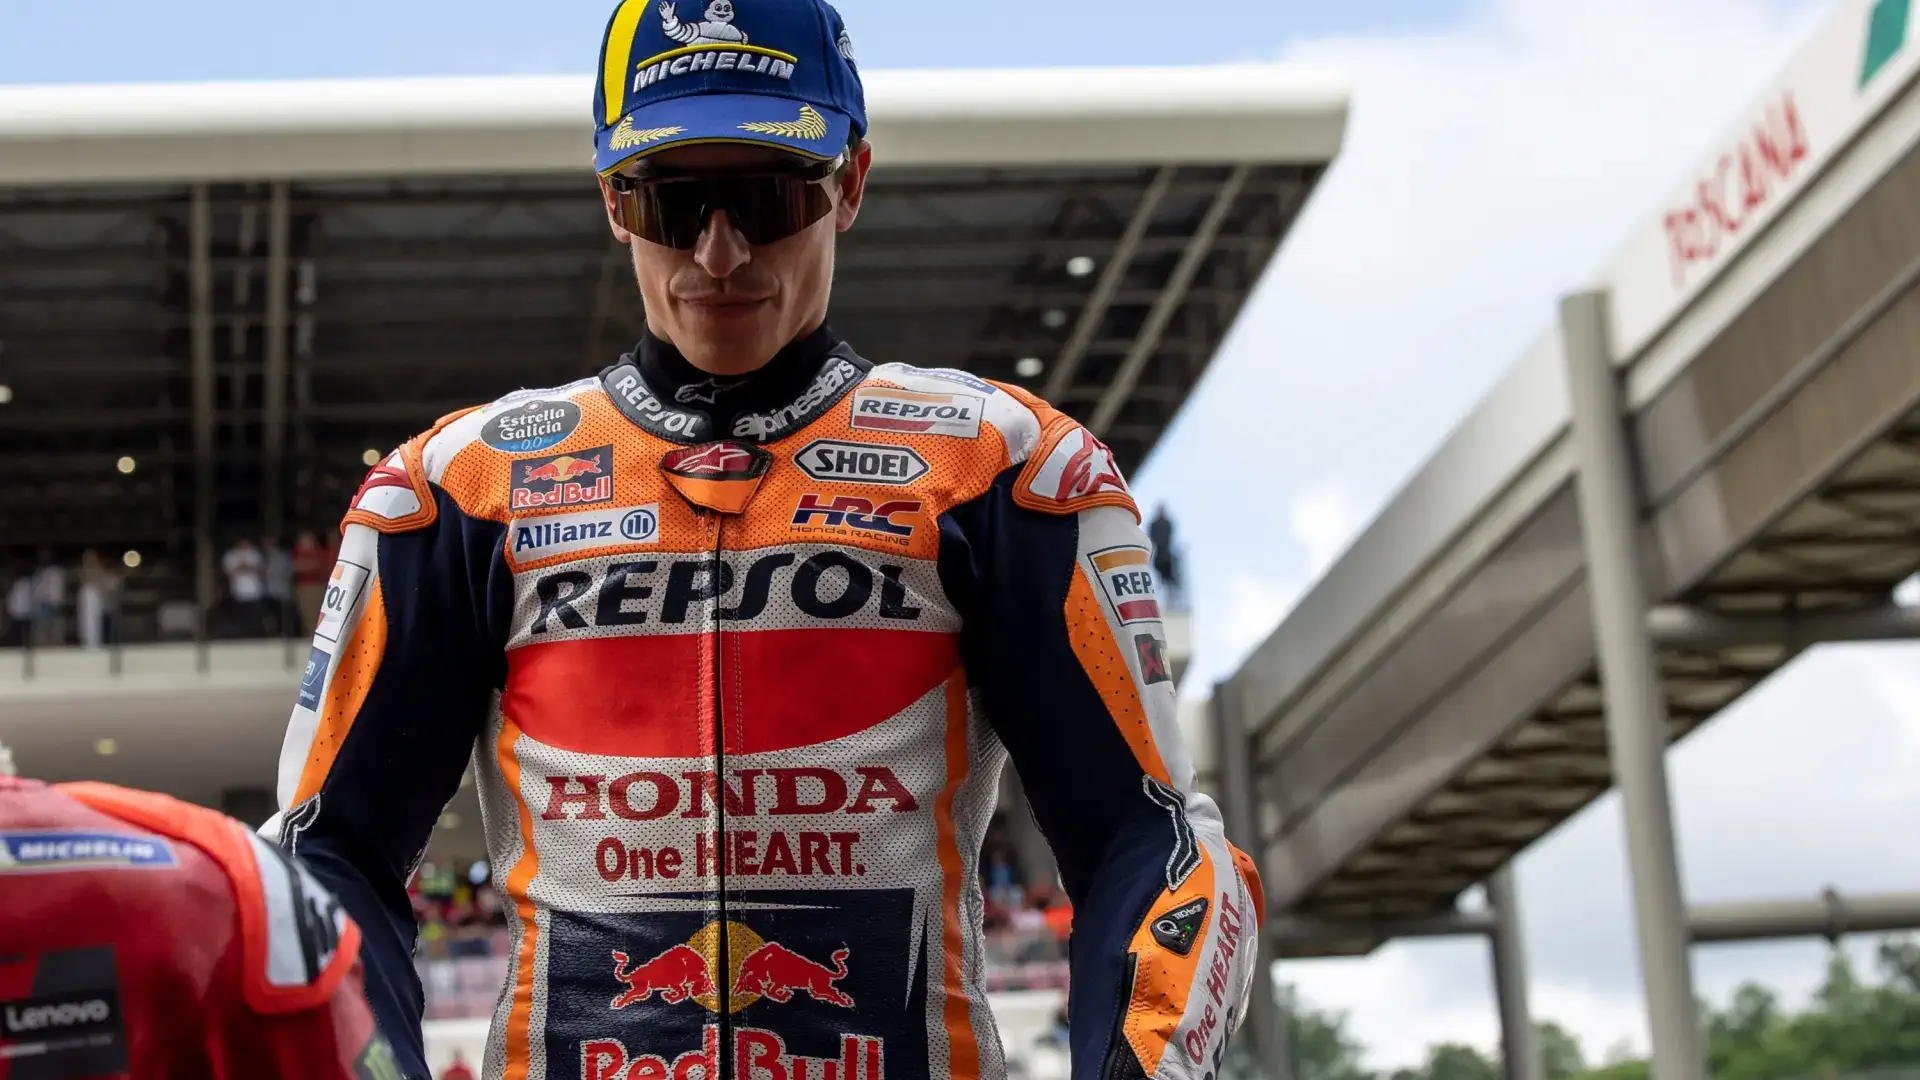 Marc Márquez's strange offer to leave Honda destroys the fundamentals of MotoGP
	

